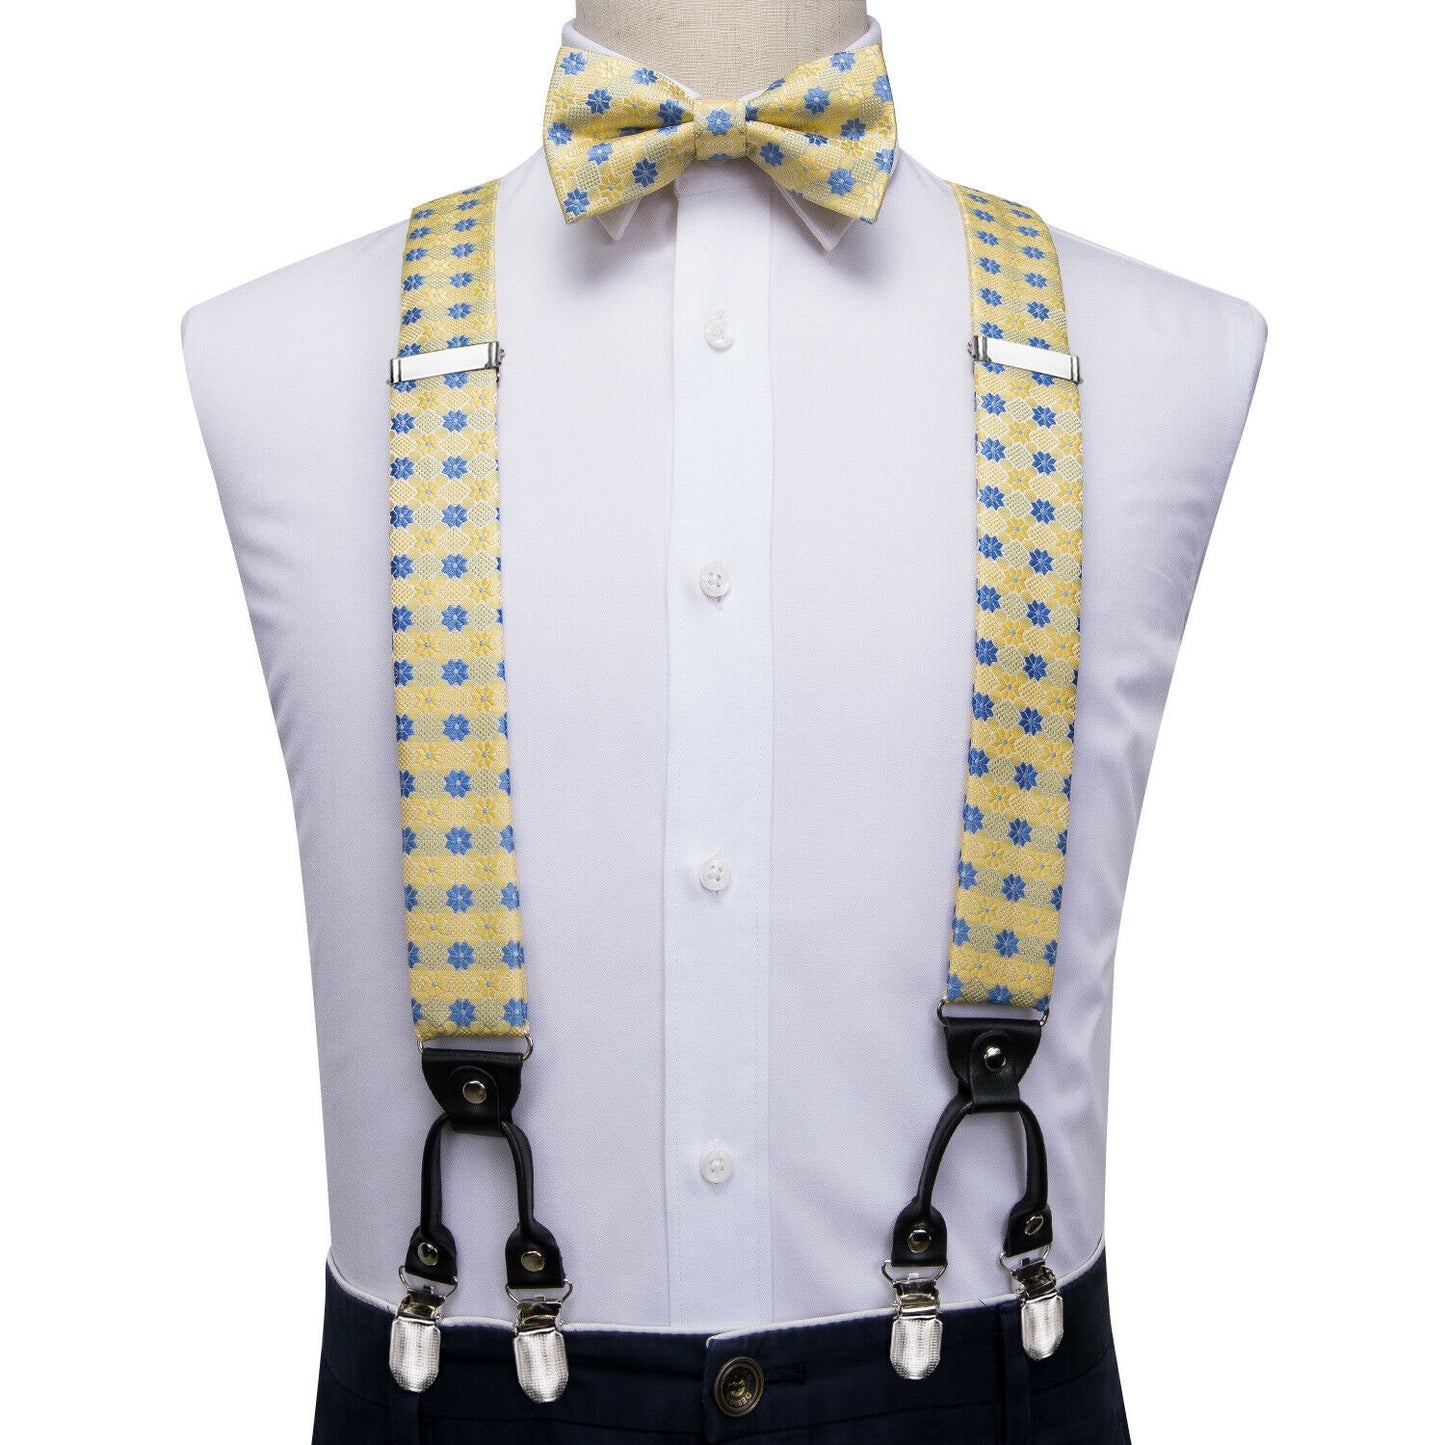 BD3020 Men's Braces Designer Clip Suspender Set [Blue Yolk]